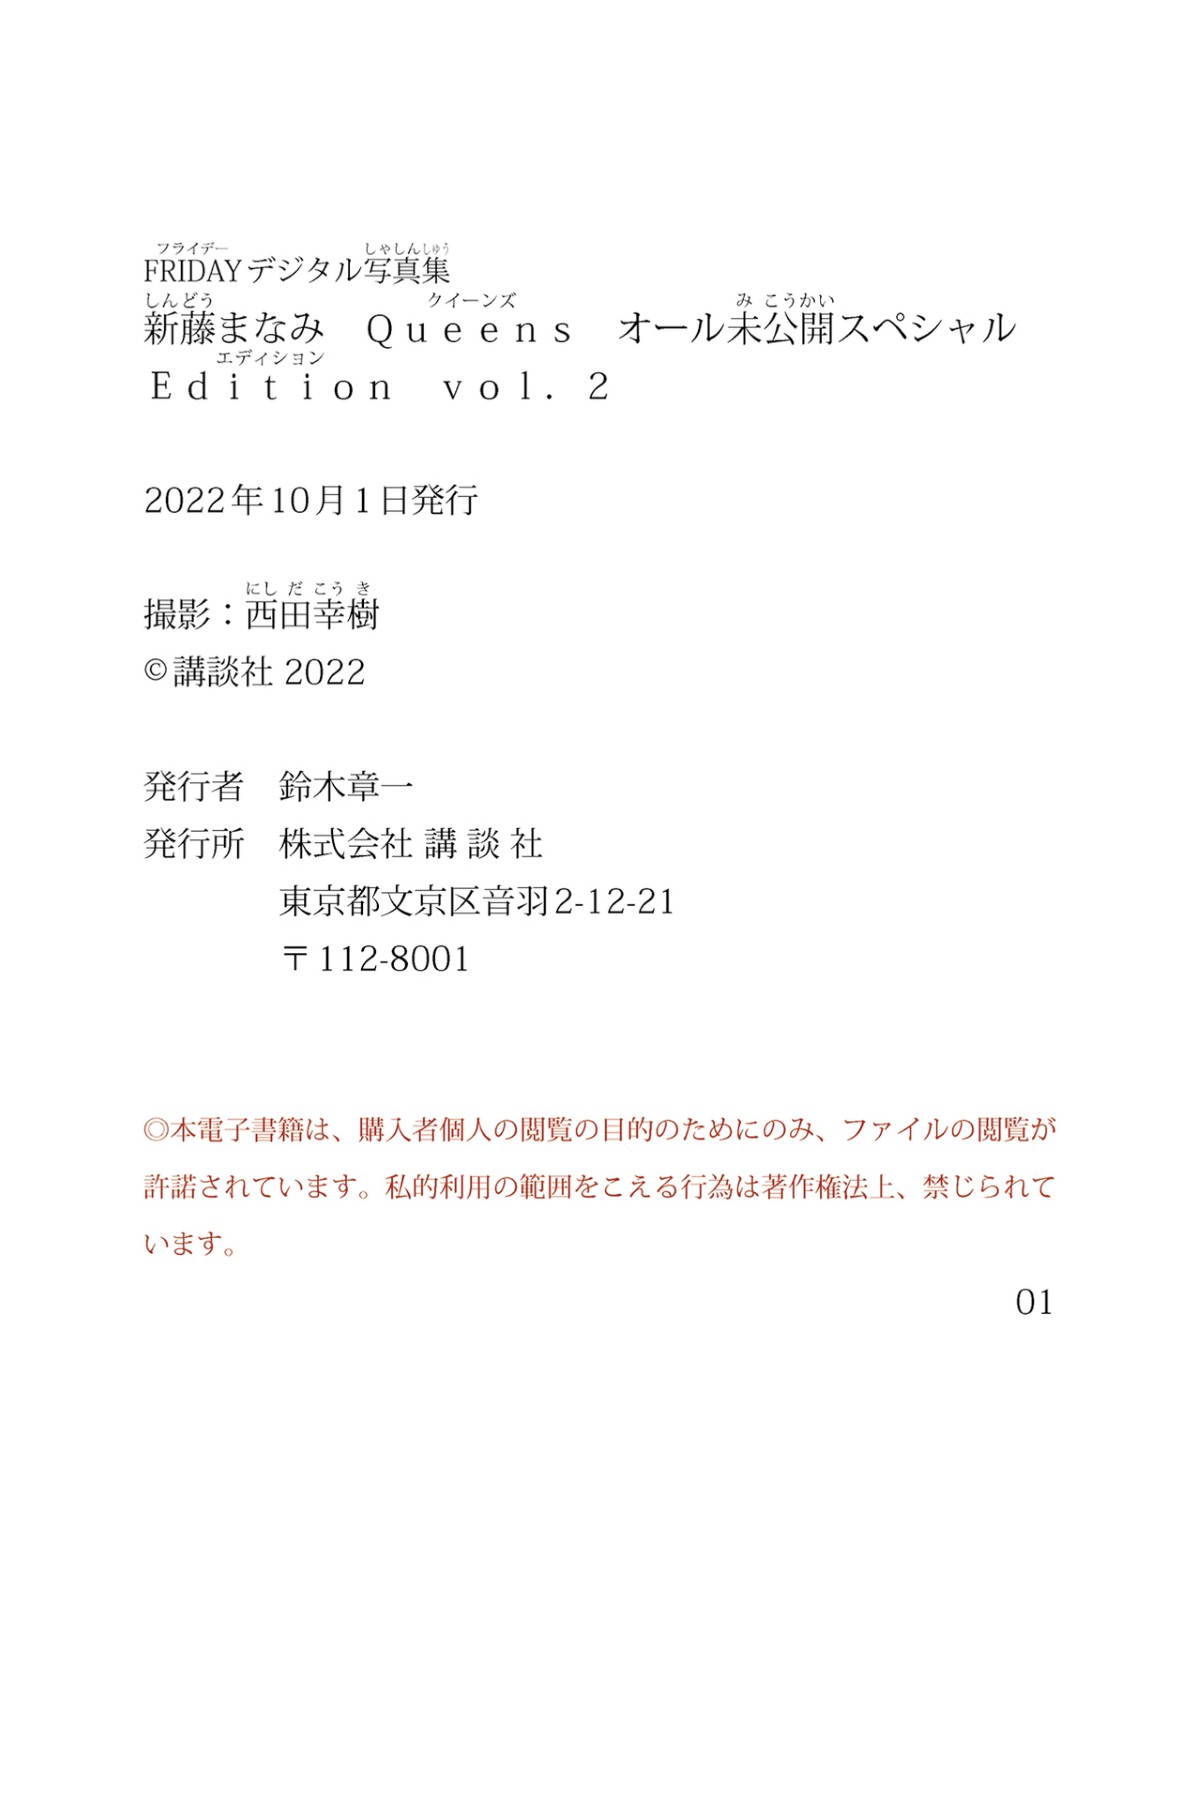 Photobook 2022 09 30 Manami Shindo 新藤まなみ Queens All Unreleased Special Edition Vol 002 0054 5993713324.jpg